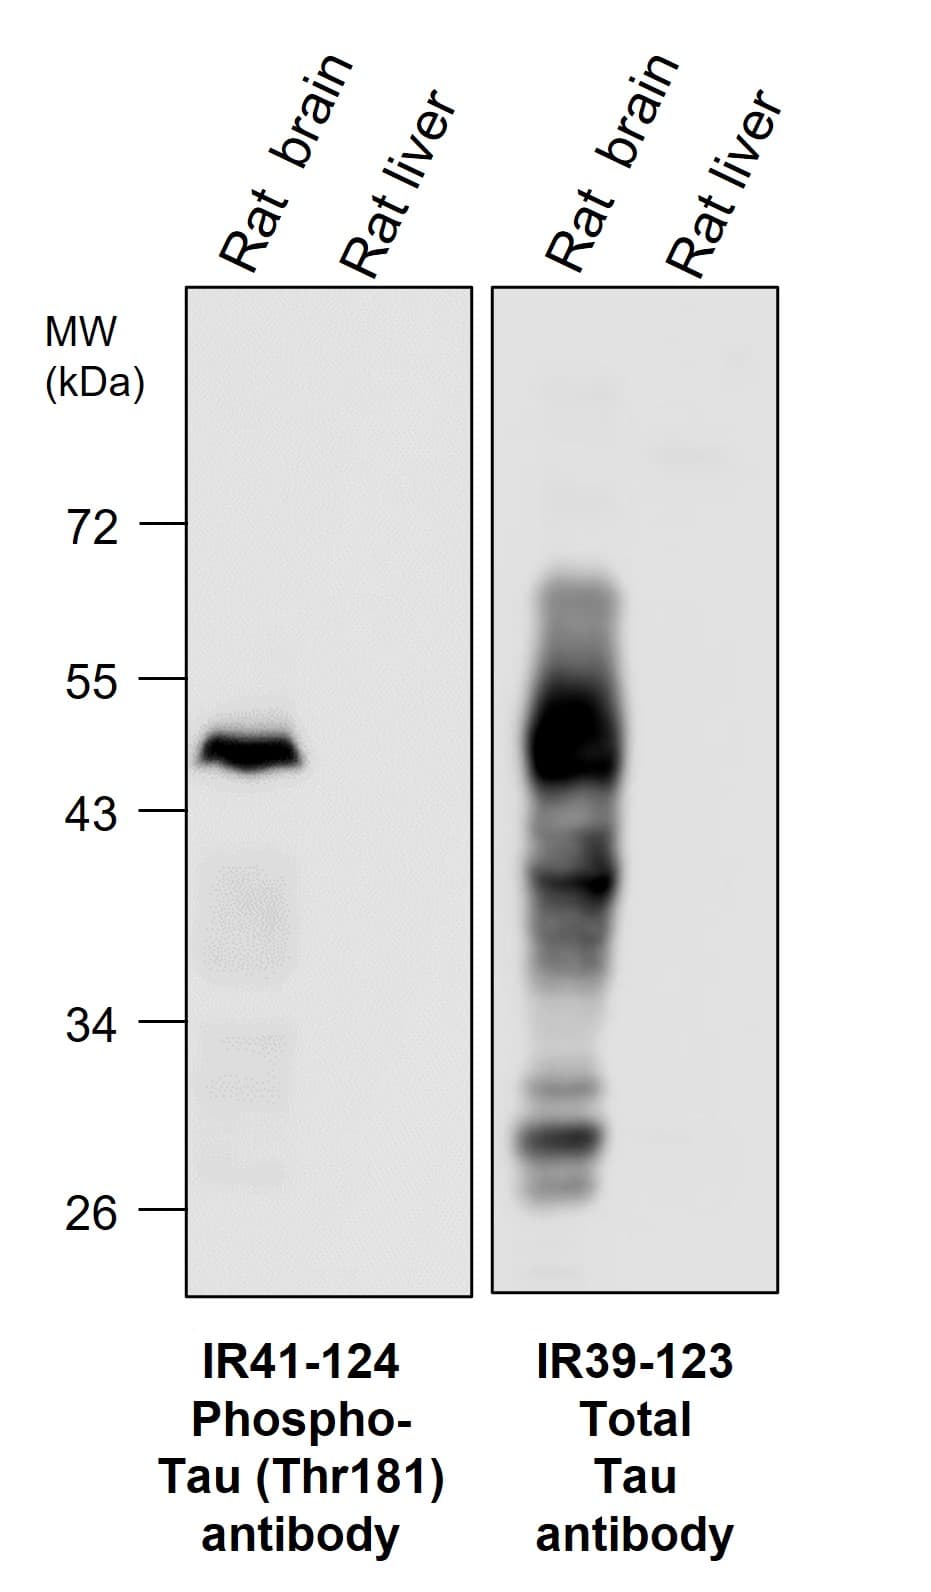 IR39-123 anti-Tau antibody WB image